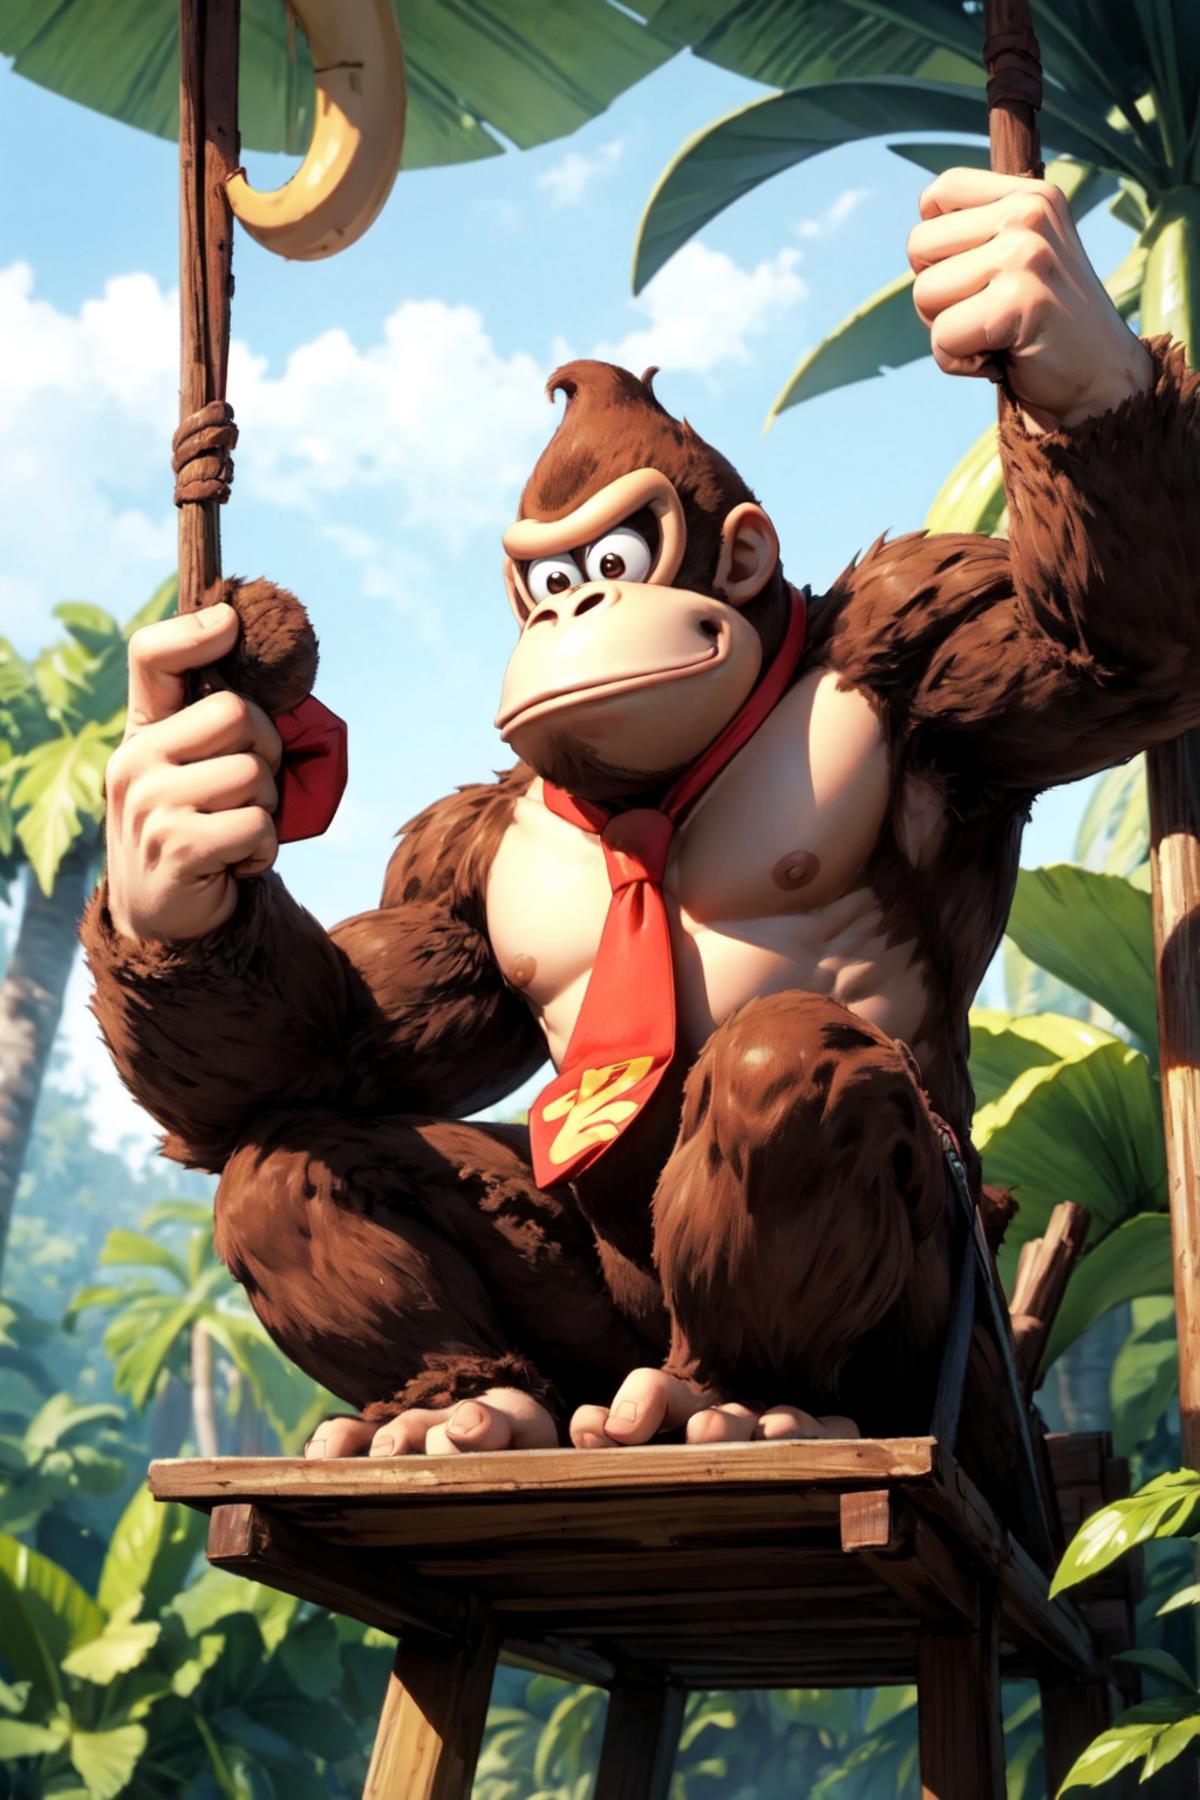 Donkey Kong | 3 character LoRA image by Kayako